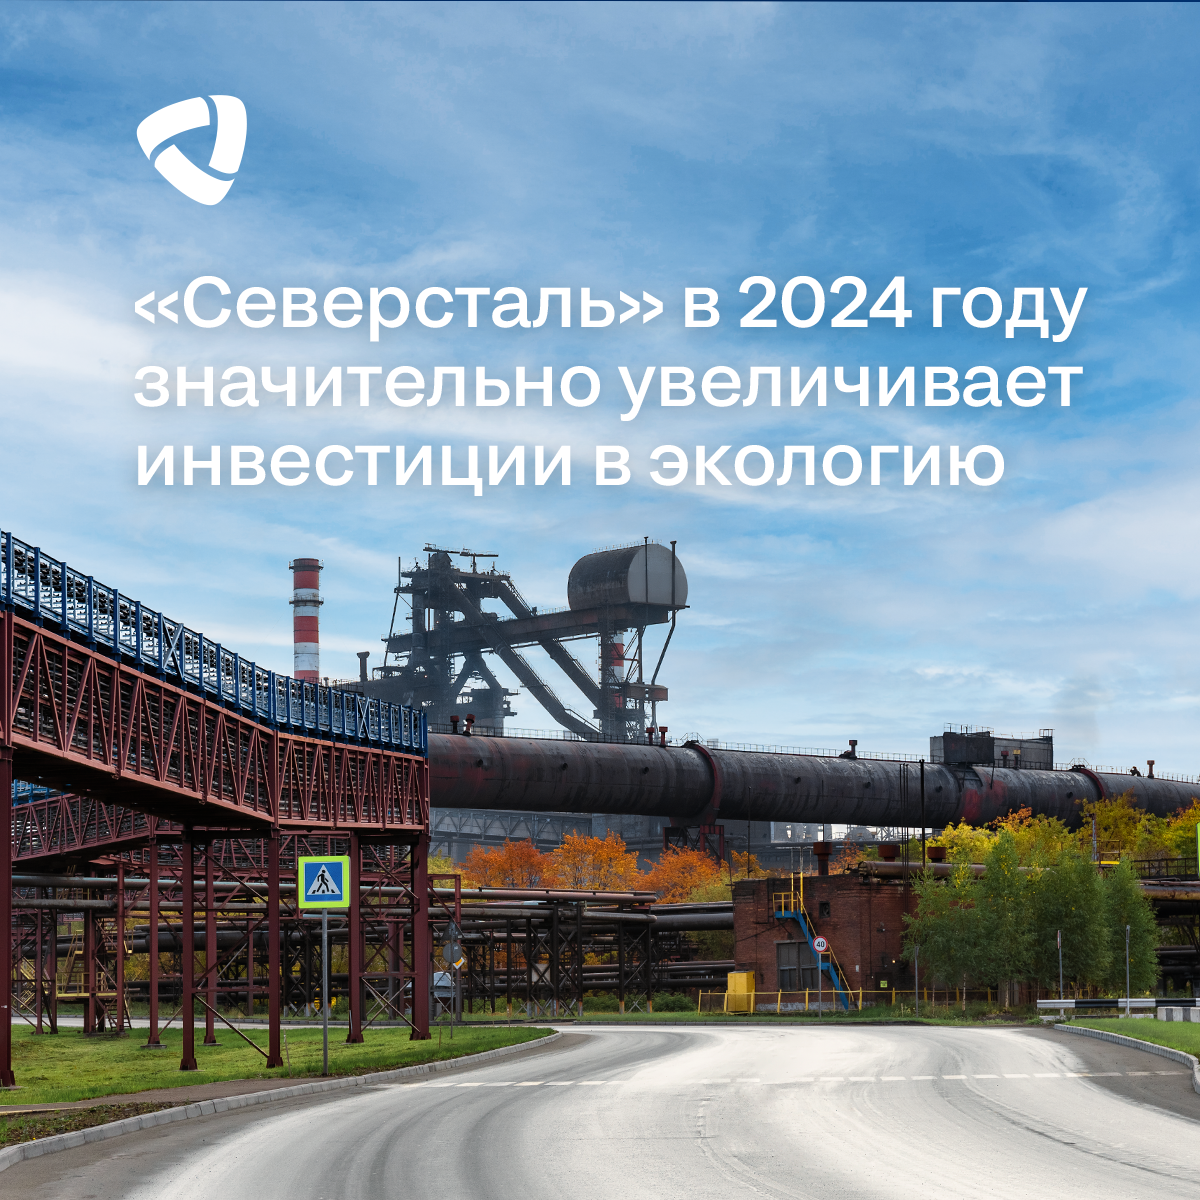 «Северсталь» в 2024 году значительно увеличивает инвестиции в экологию - на 50% в целом по компании и на 73% по ЧерМК (относительно 2023 года).